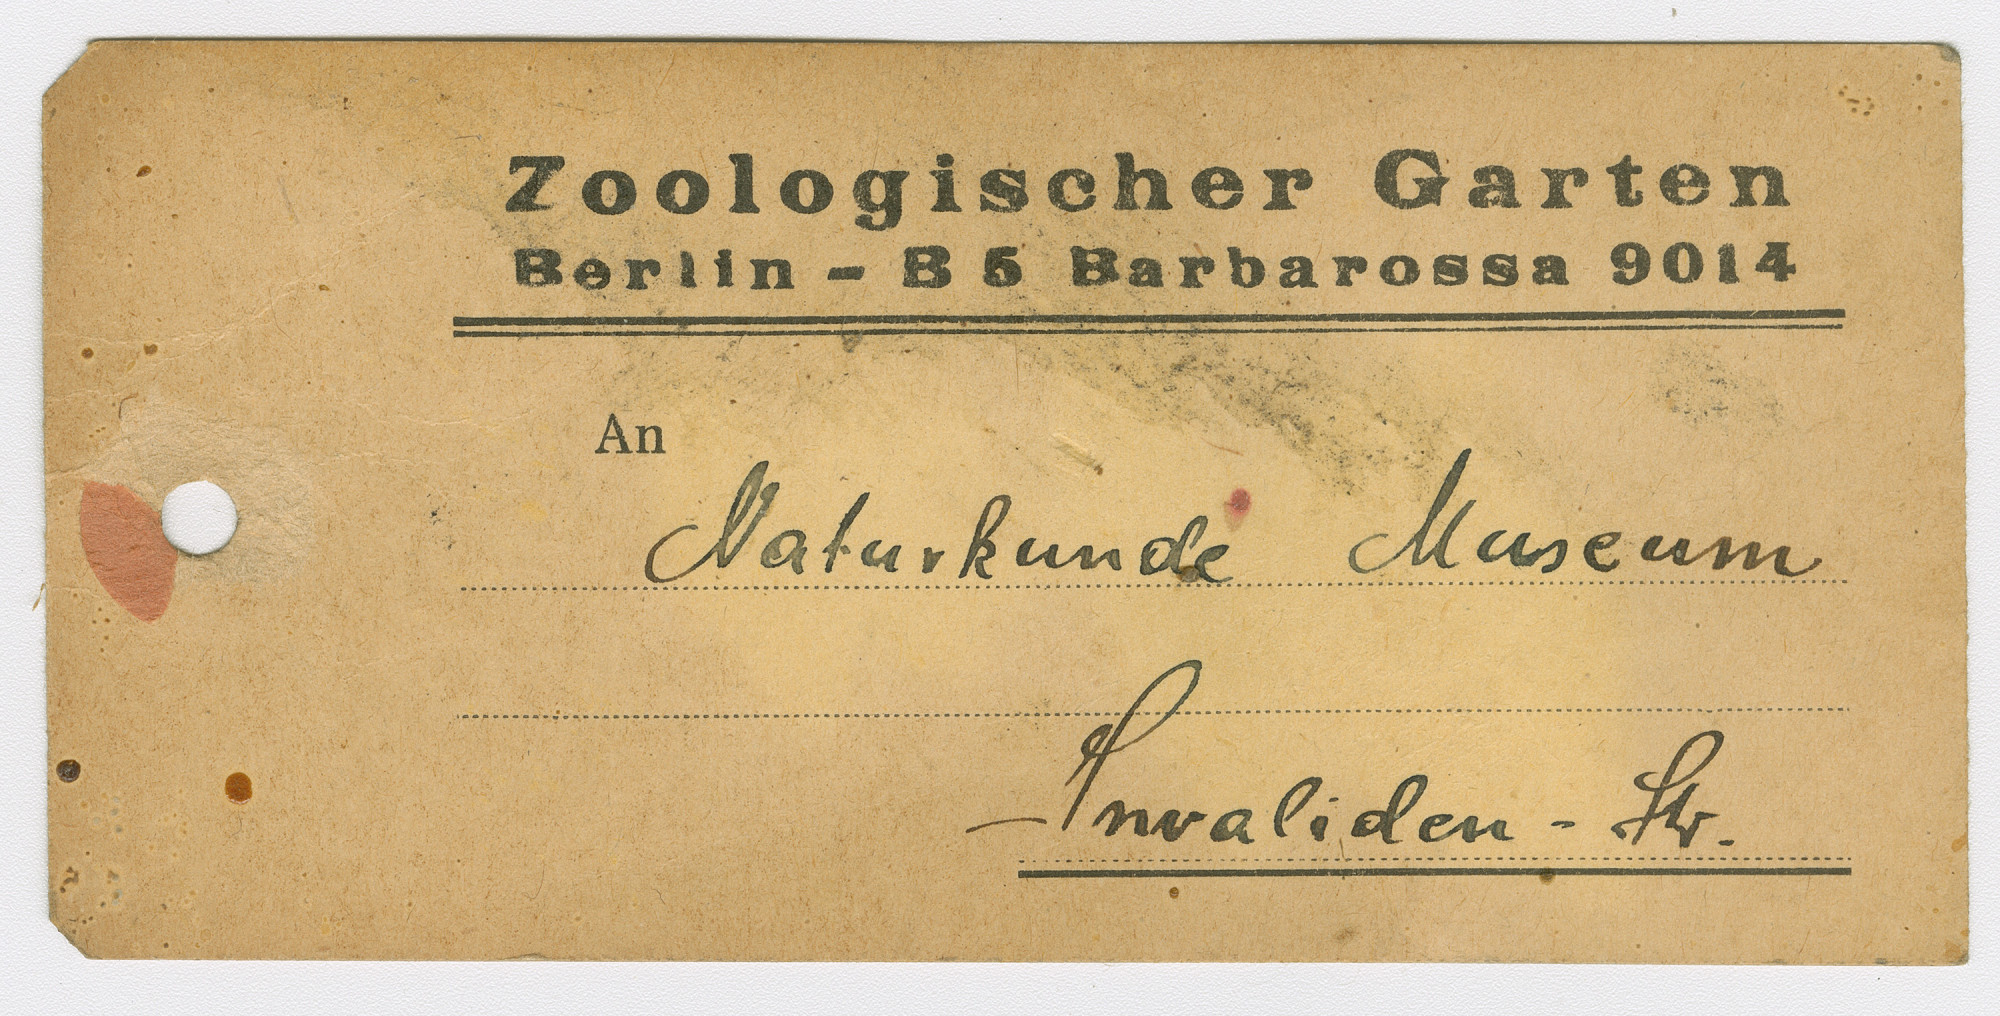 Vergilbte, gelochte Papierkarte mit Flecken. Vordruck oben: Zoologischer Garten Berlin – B5 Barbarossa 9014 / An. Handschriftlich: Naturkunde Museum / Invaliden-Str.